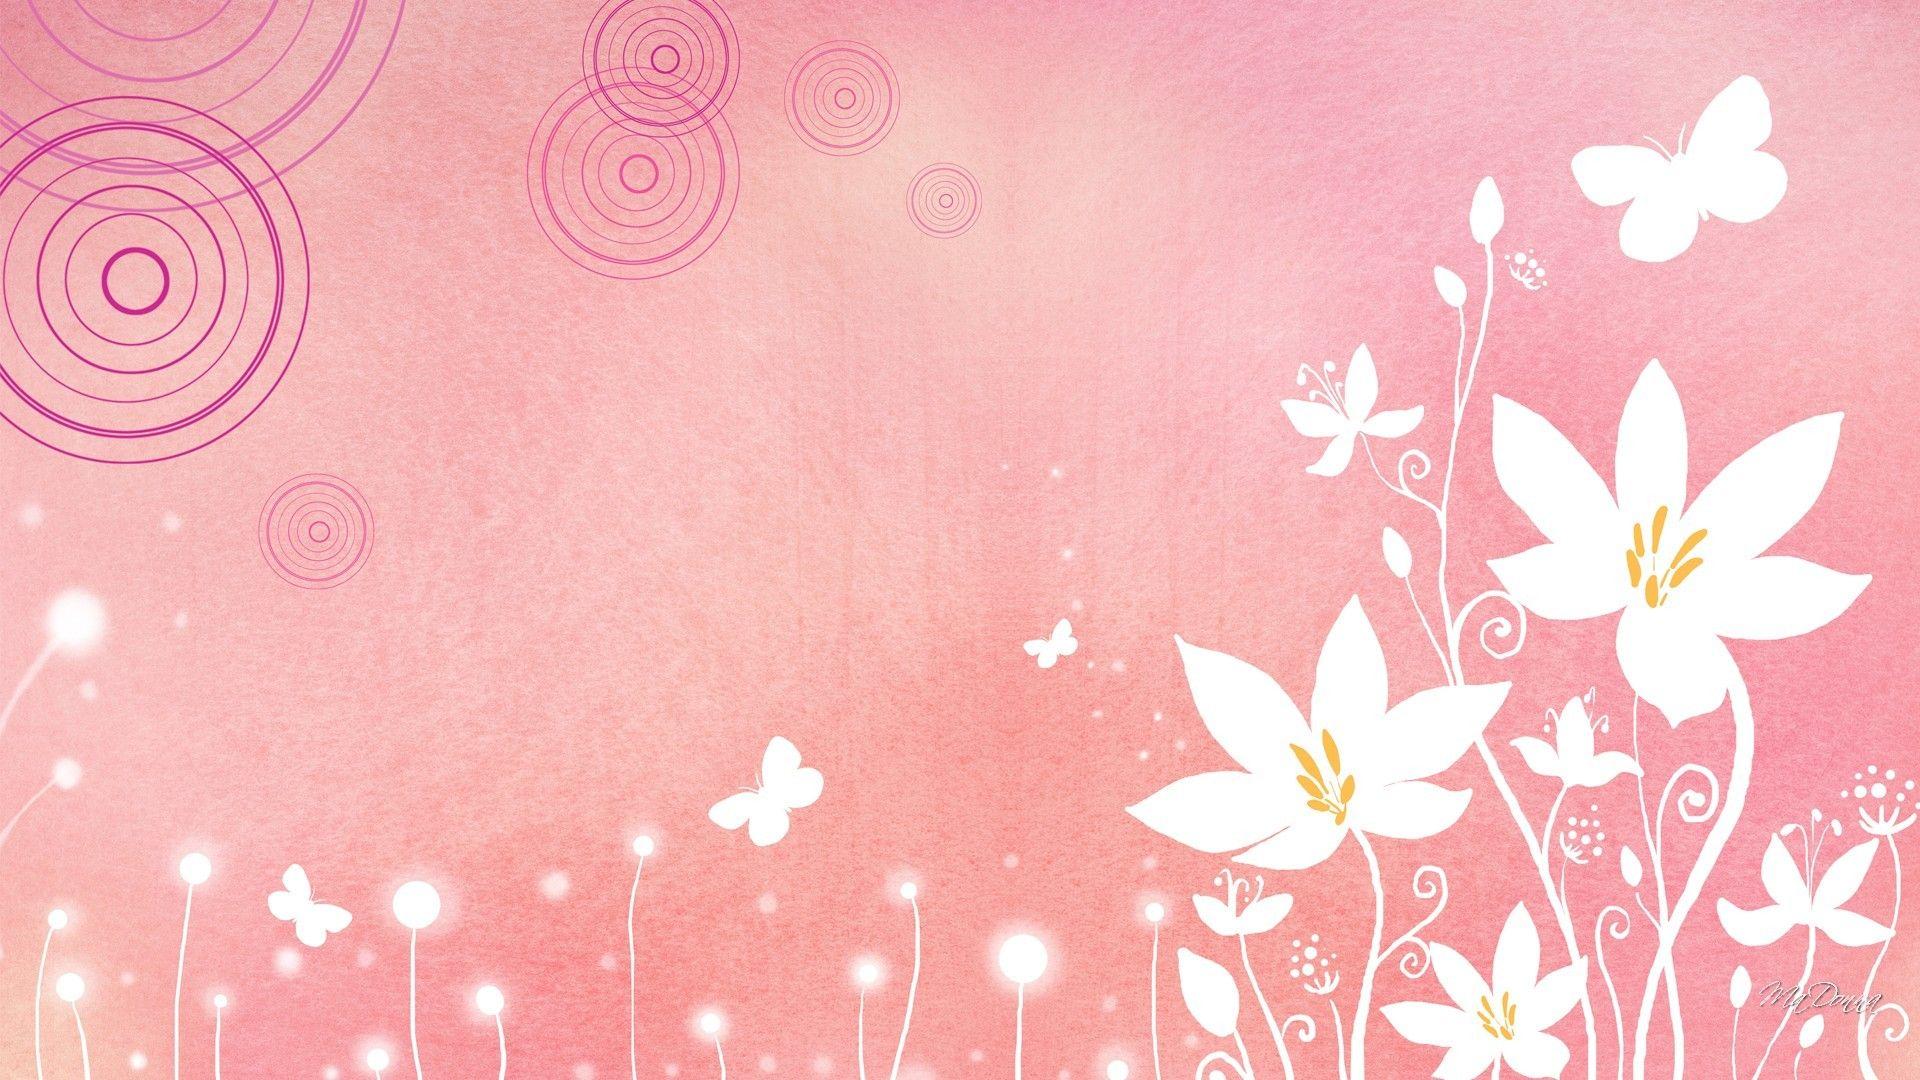 Flowers: Soft Summer Flowers Pink Bokeh Butterflies Spring Abstract